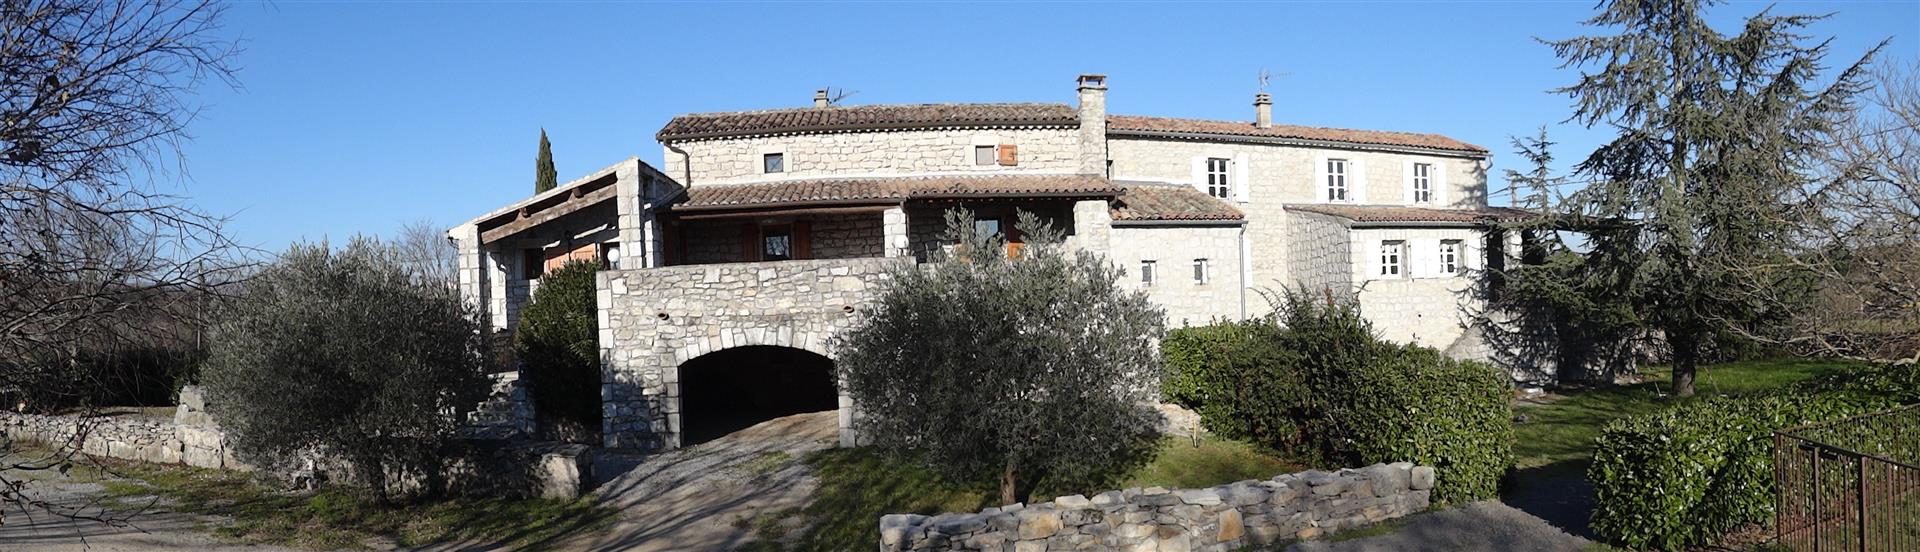 Frumoasa și marea casă veche din Ardèche cu caracter din piatră